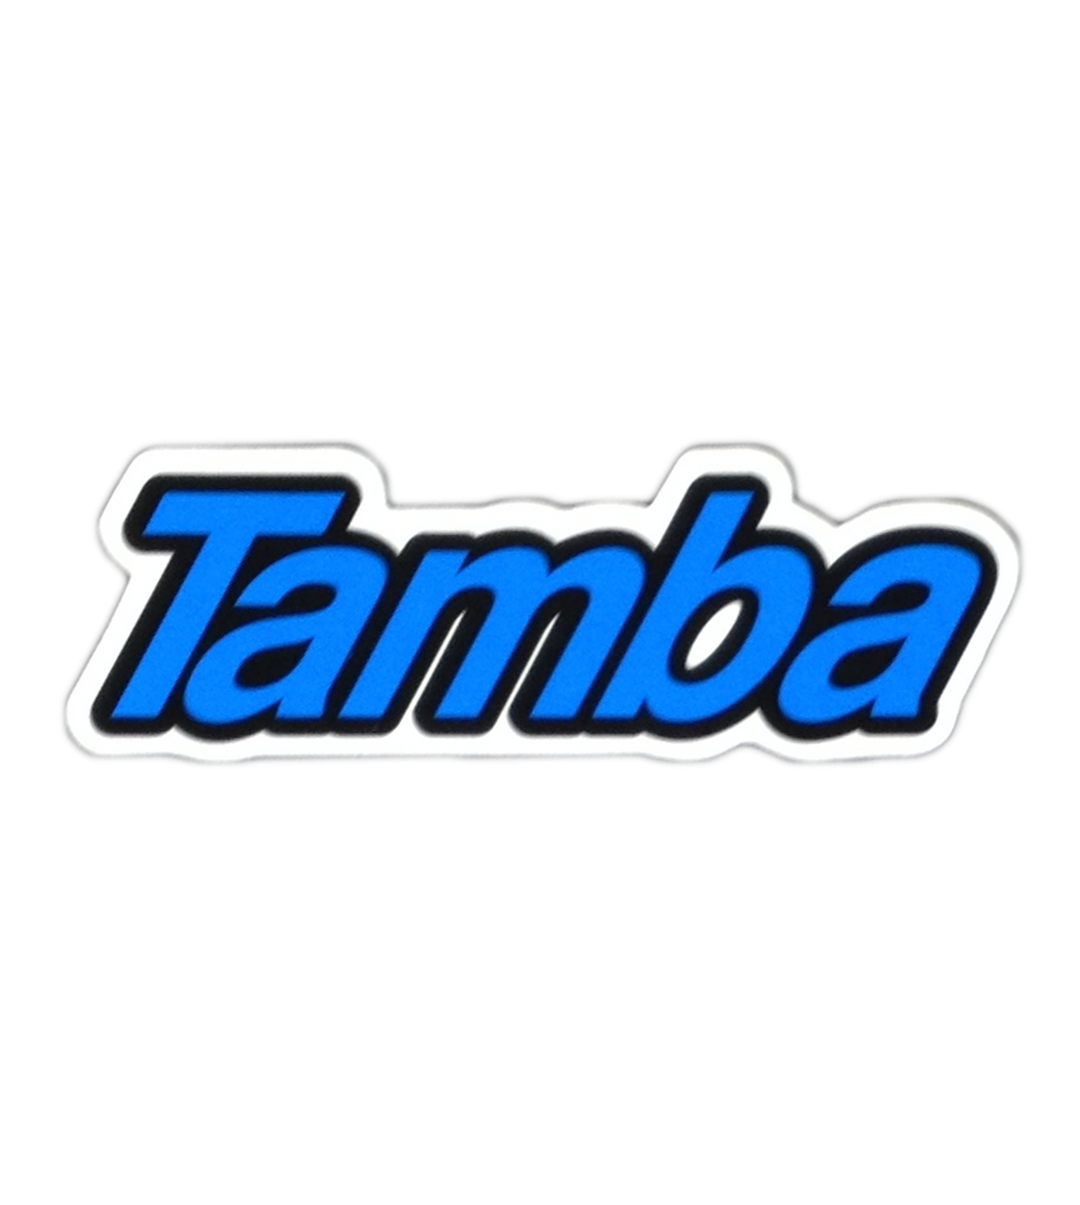 Tamba Contour Logo Sticker 4-1/4 x 1-1/2